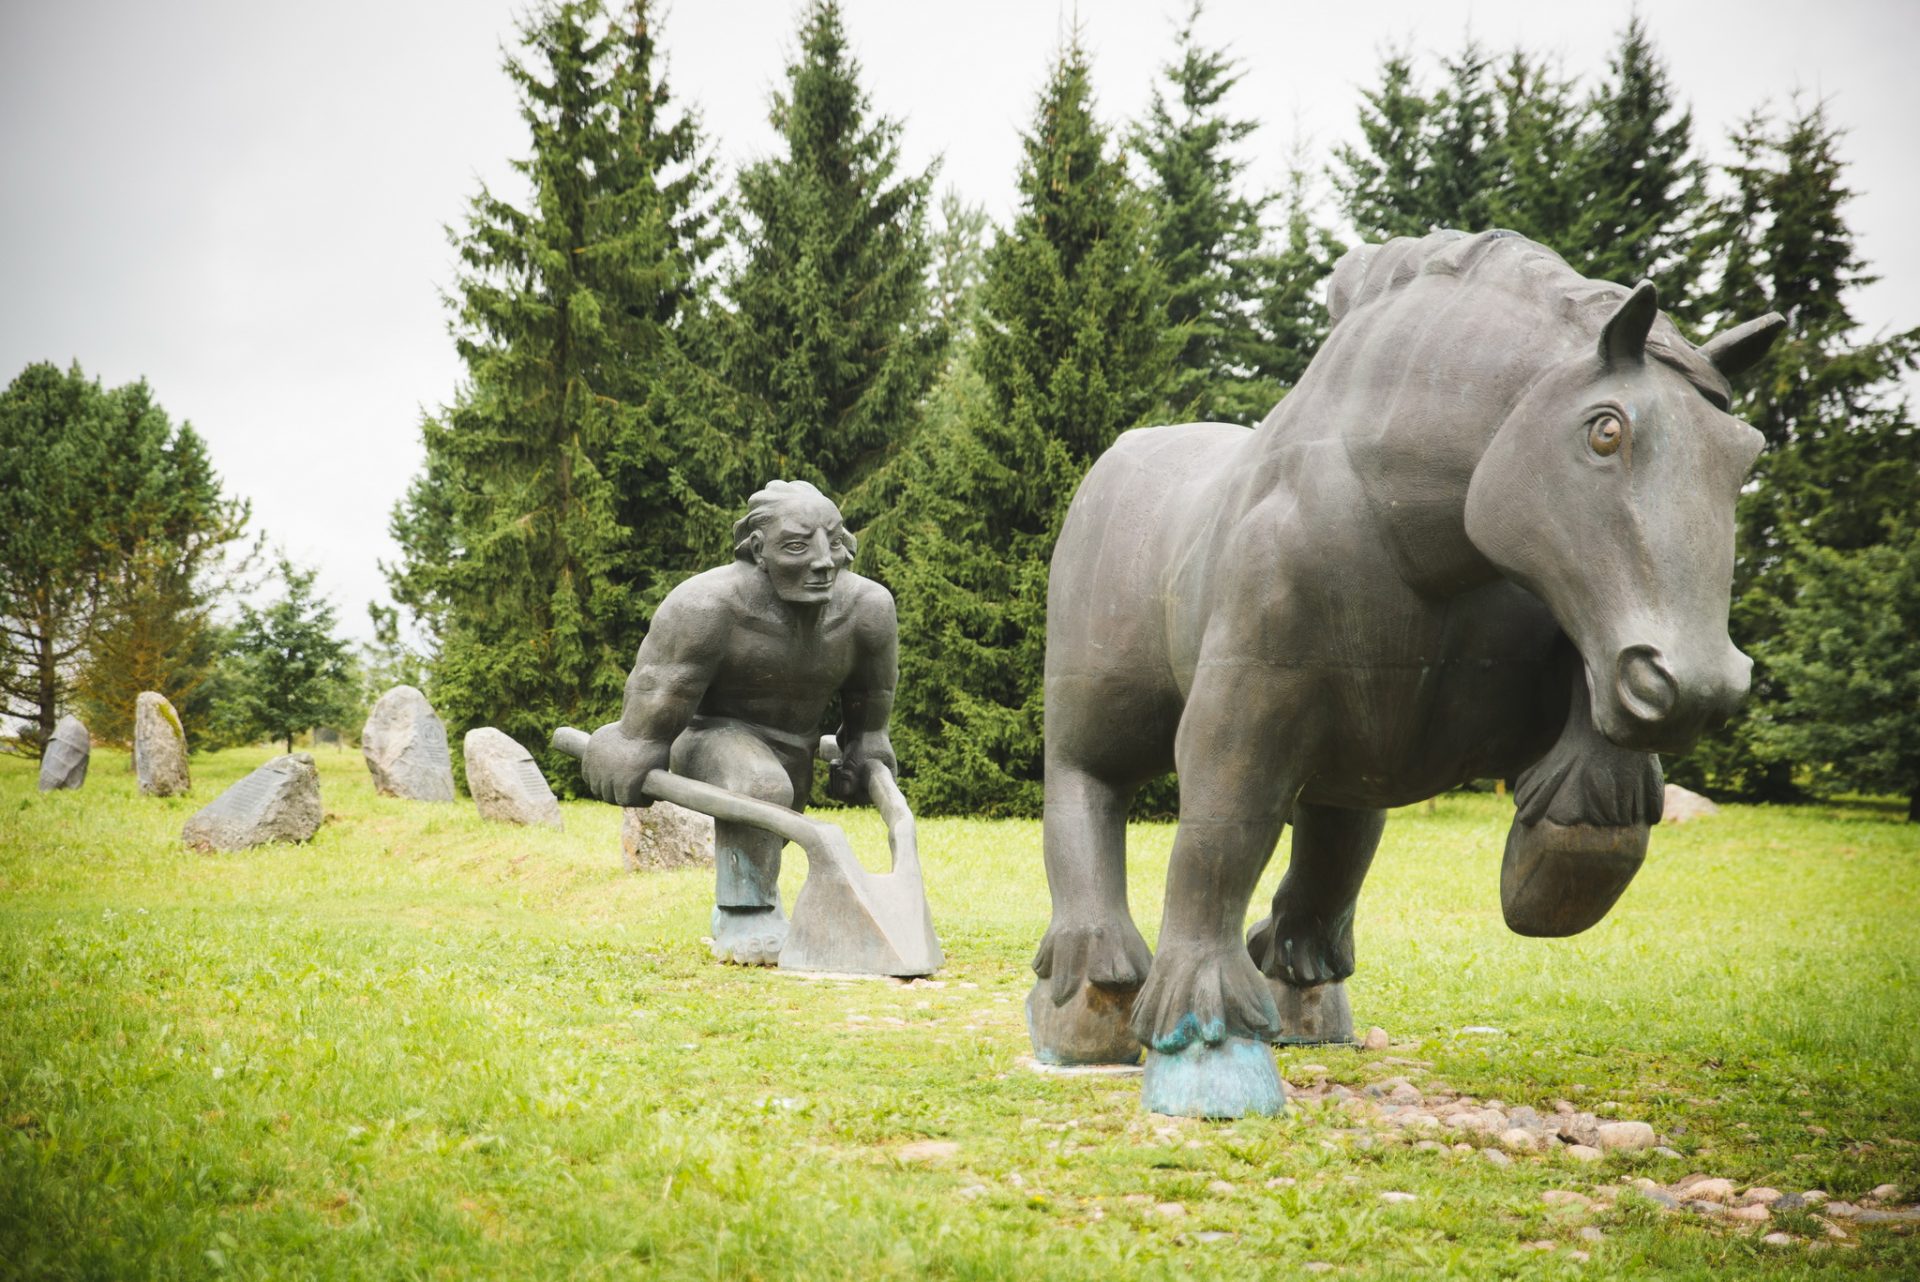 Два десятилетия Антс Паю мечтал о размещении в парке «Сыпрузе» скульптуры, которые ещё сильнее несли бы идею дружбы и заботы о согражданах. Летом 2004 года мечта Антса Паю была осуществлена при его жизни.